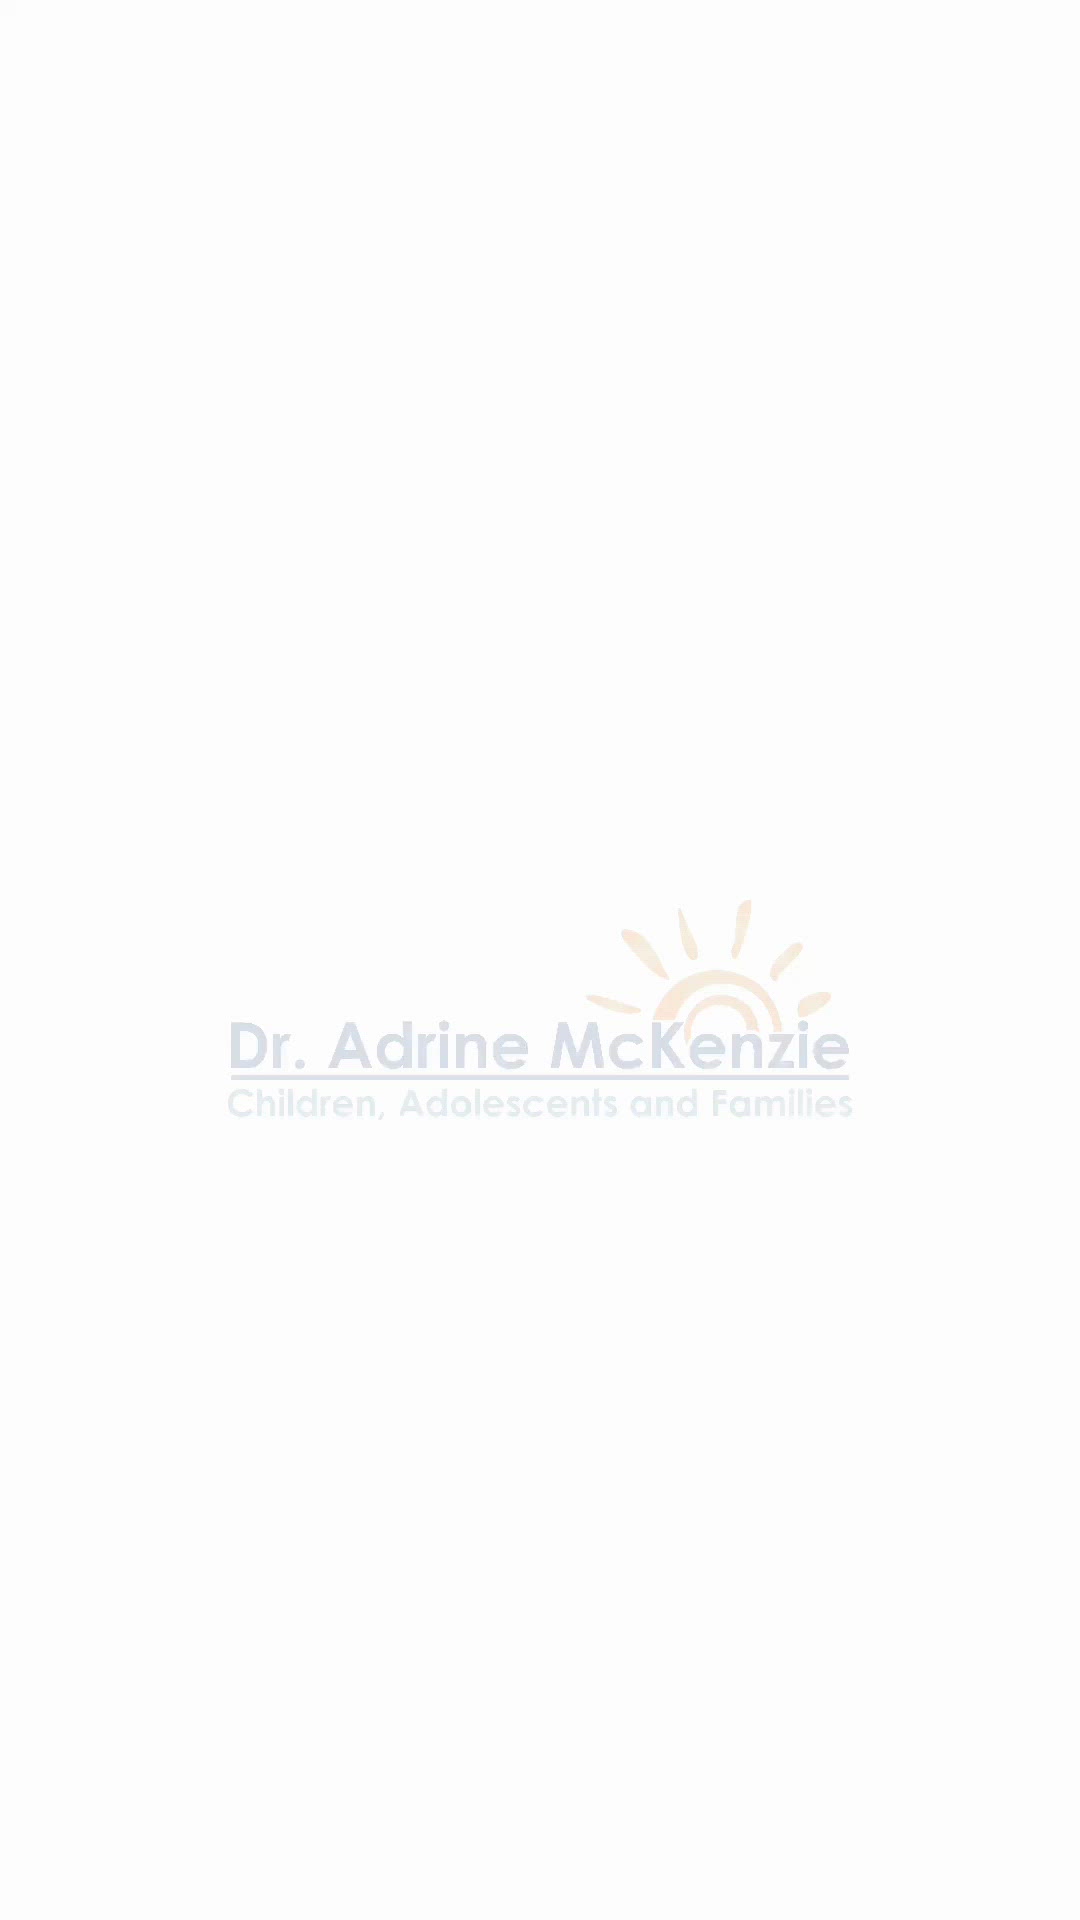 Dr. Adrine McKenzie